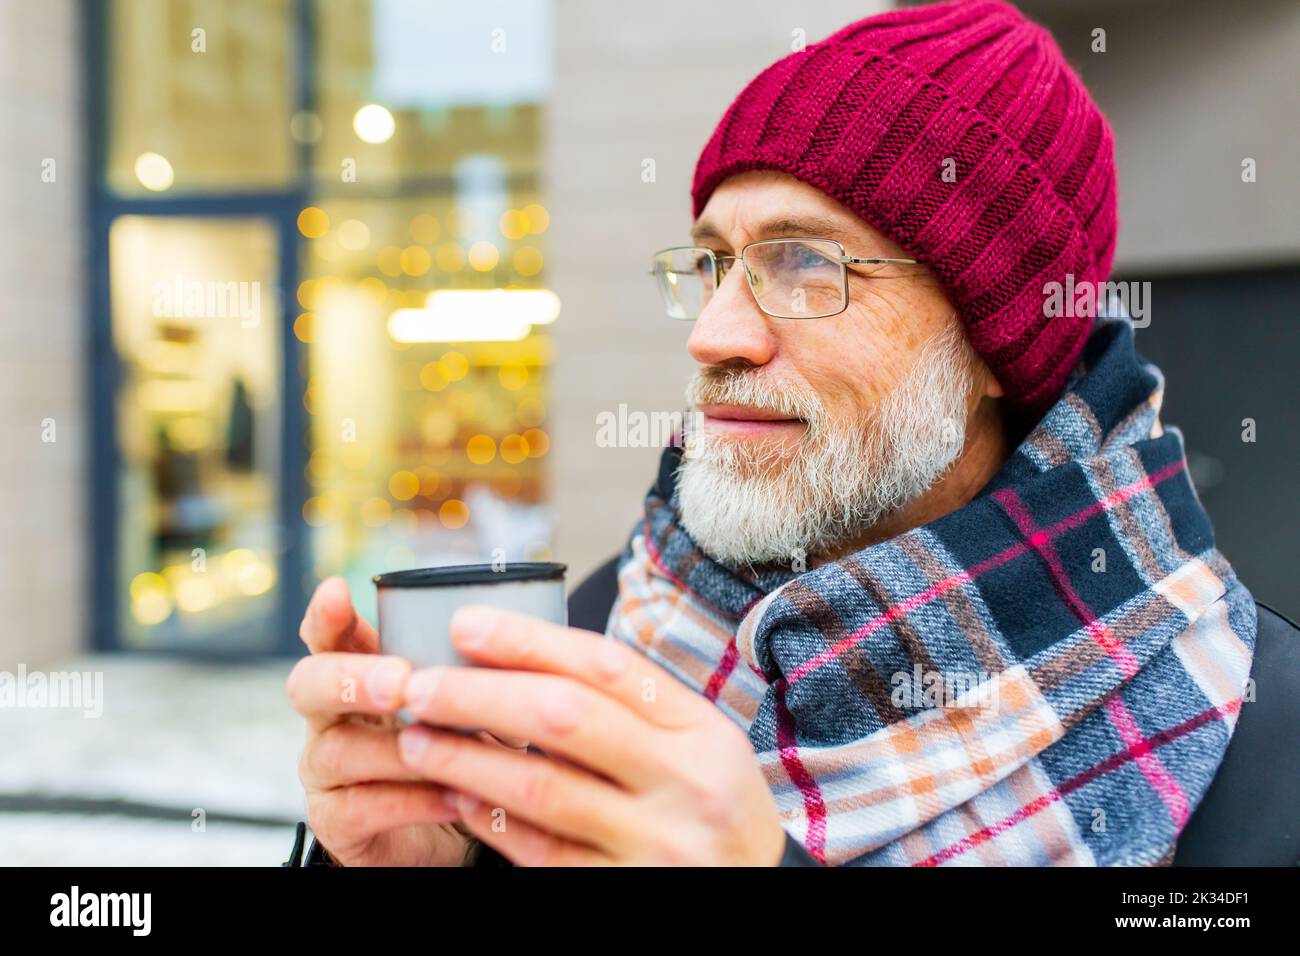 heureux homme mature en hiver marché de noël en plein air avec paysage urbain en arrière-plan Banque D'Images